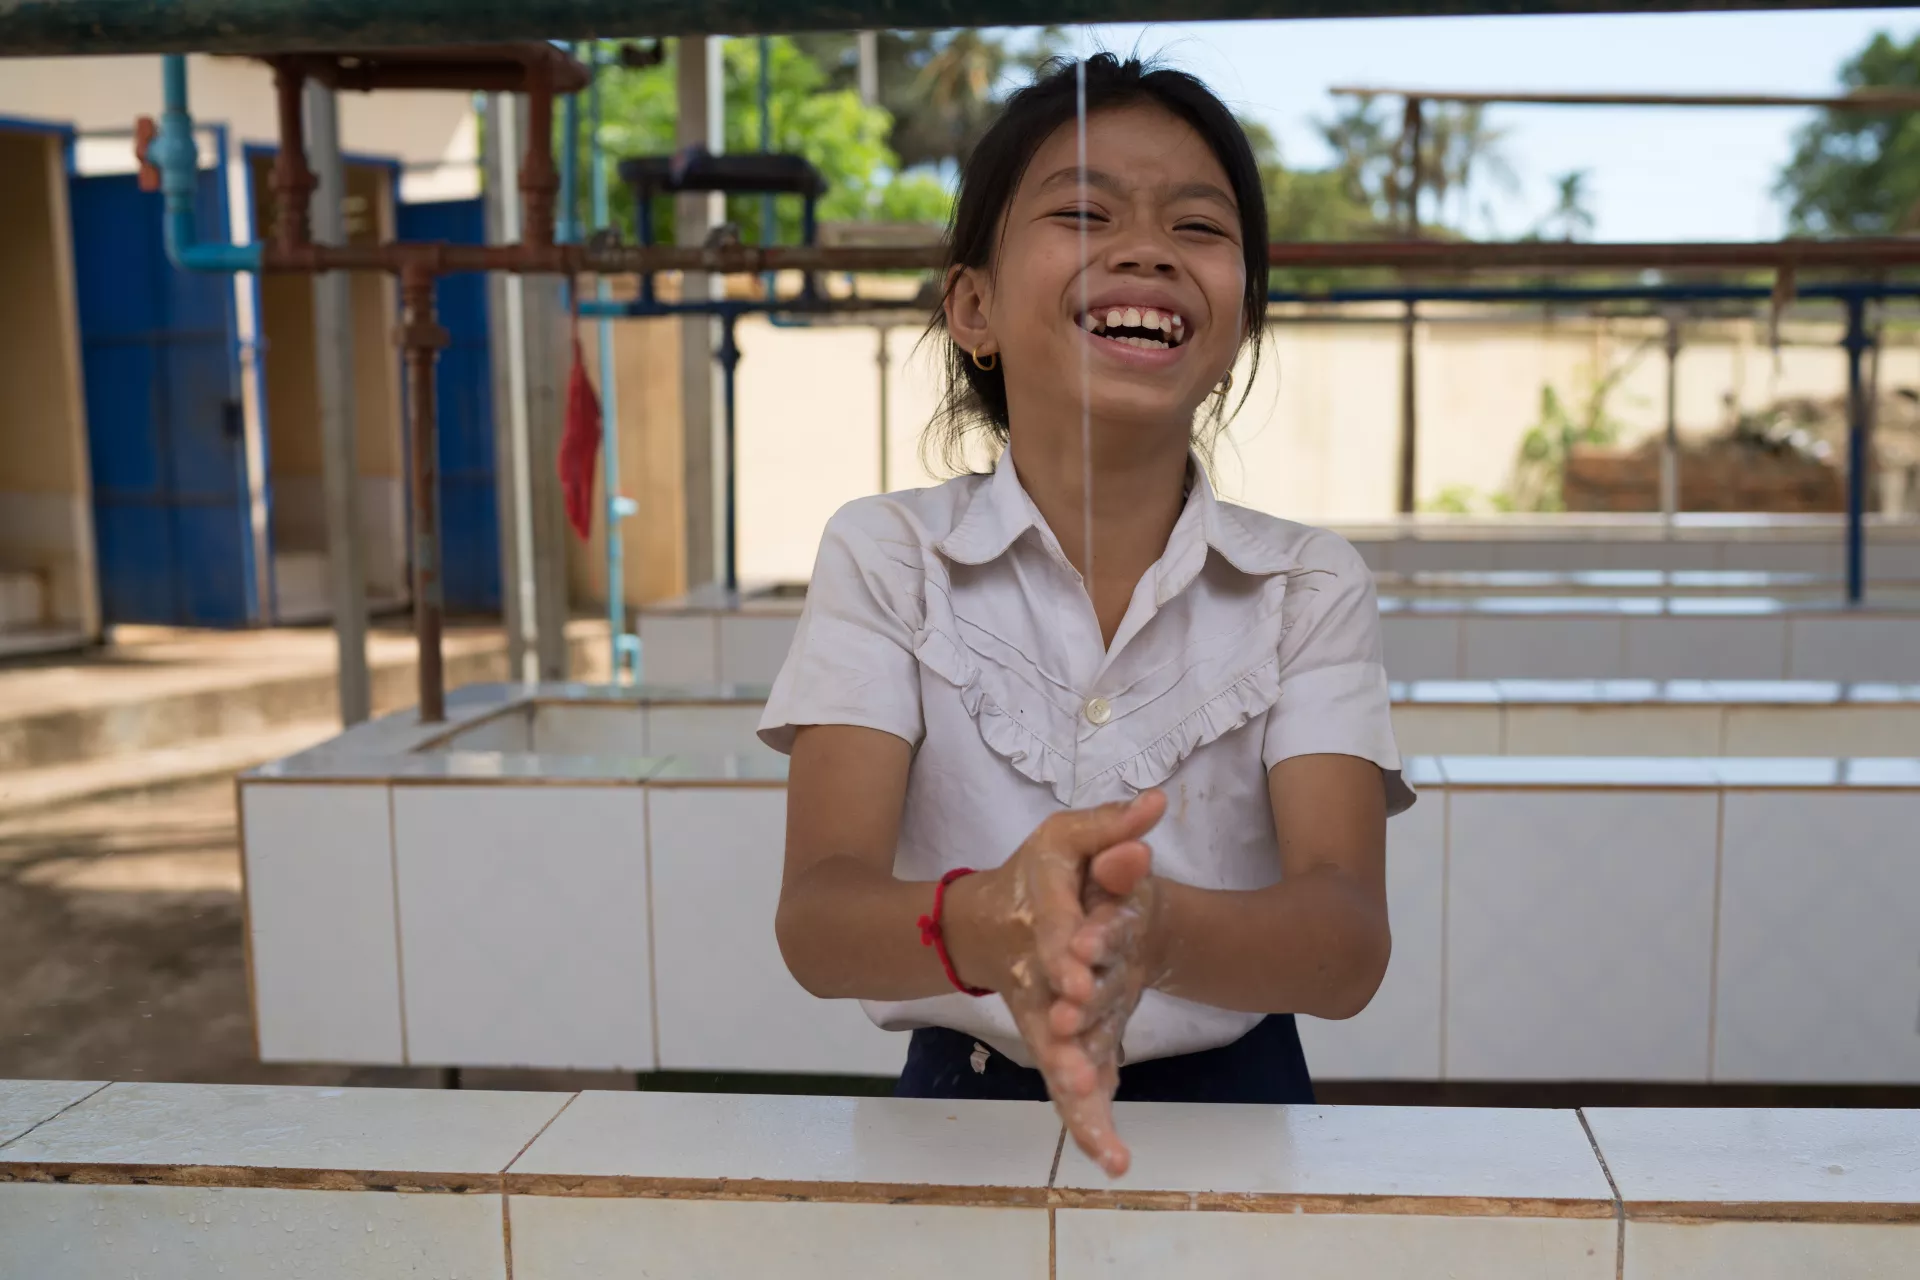 تلميذة تبتسم وهي تغسل يديها عند مرفق المياه وخدمات الصرف الصحي والنظافة الصحية في مدرسة كامبونغ ثمار الابتدائية في قرية كانغ ساو.